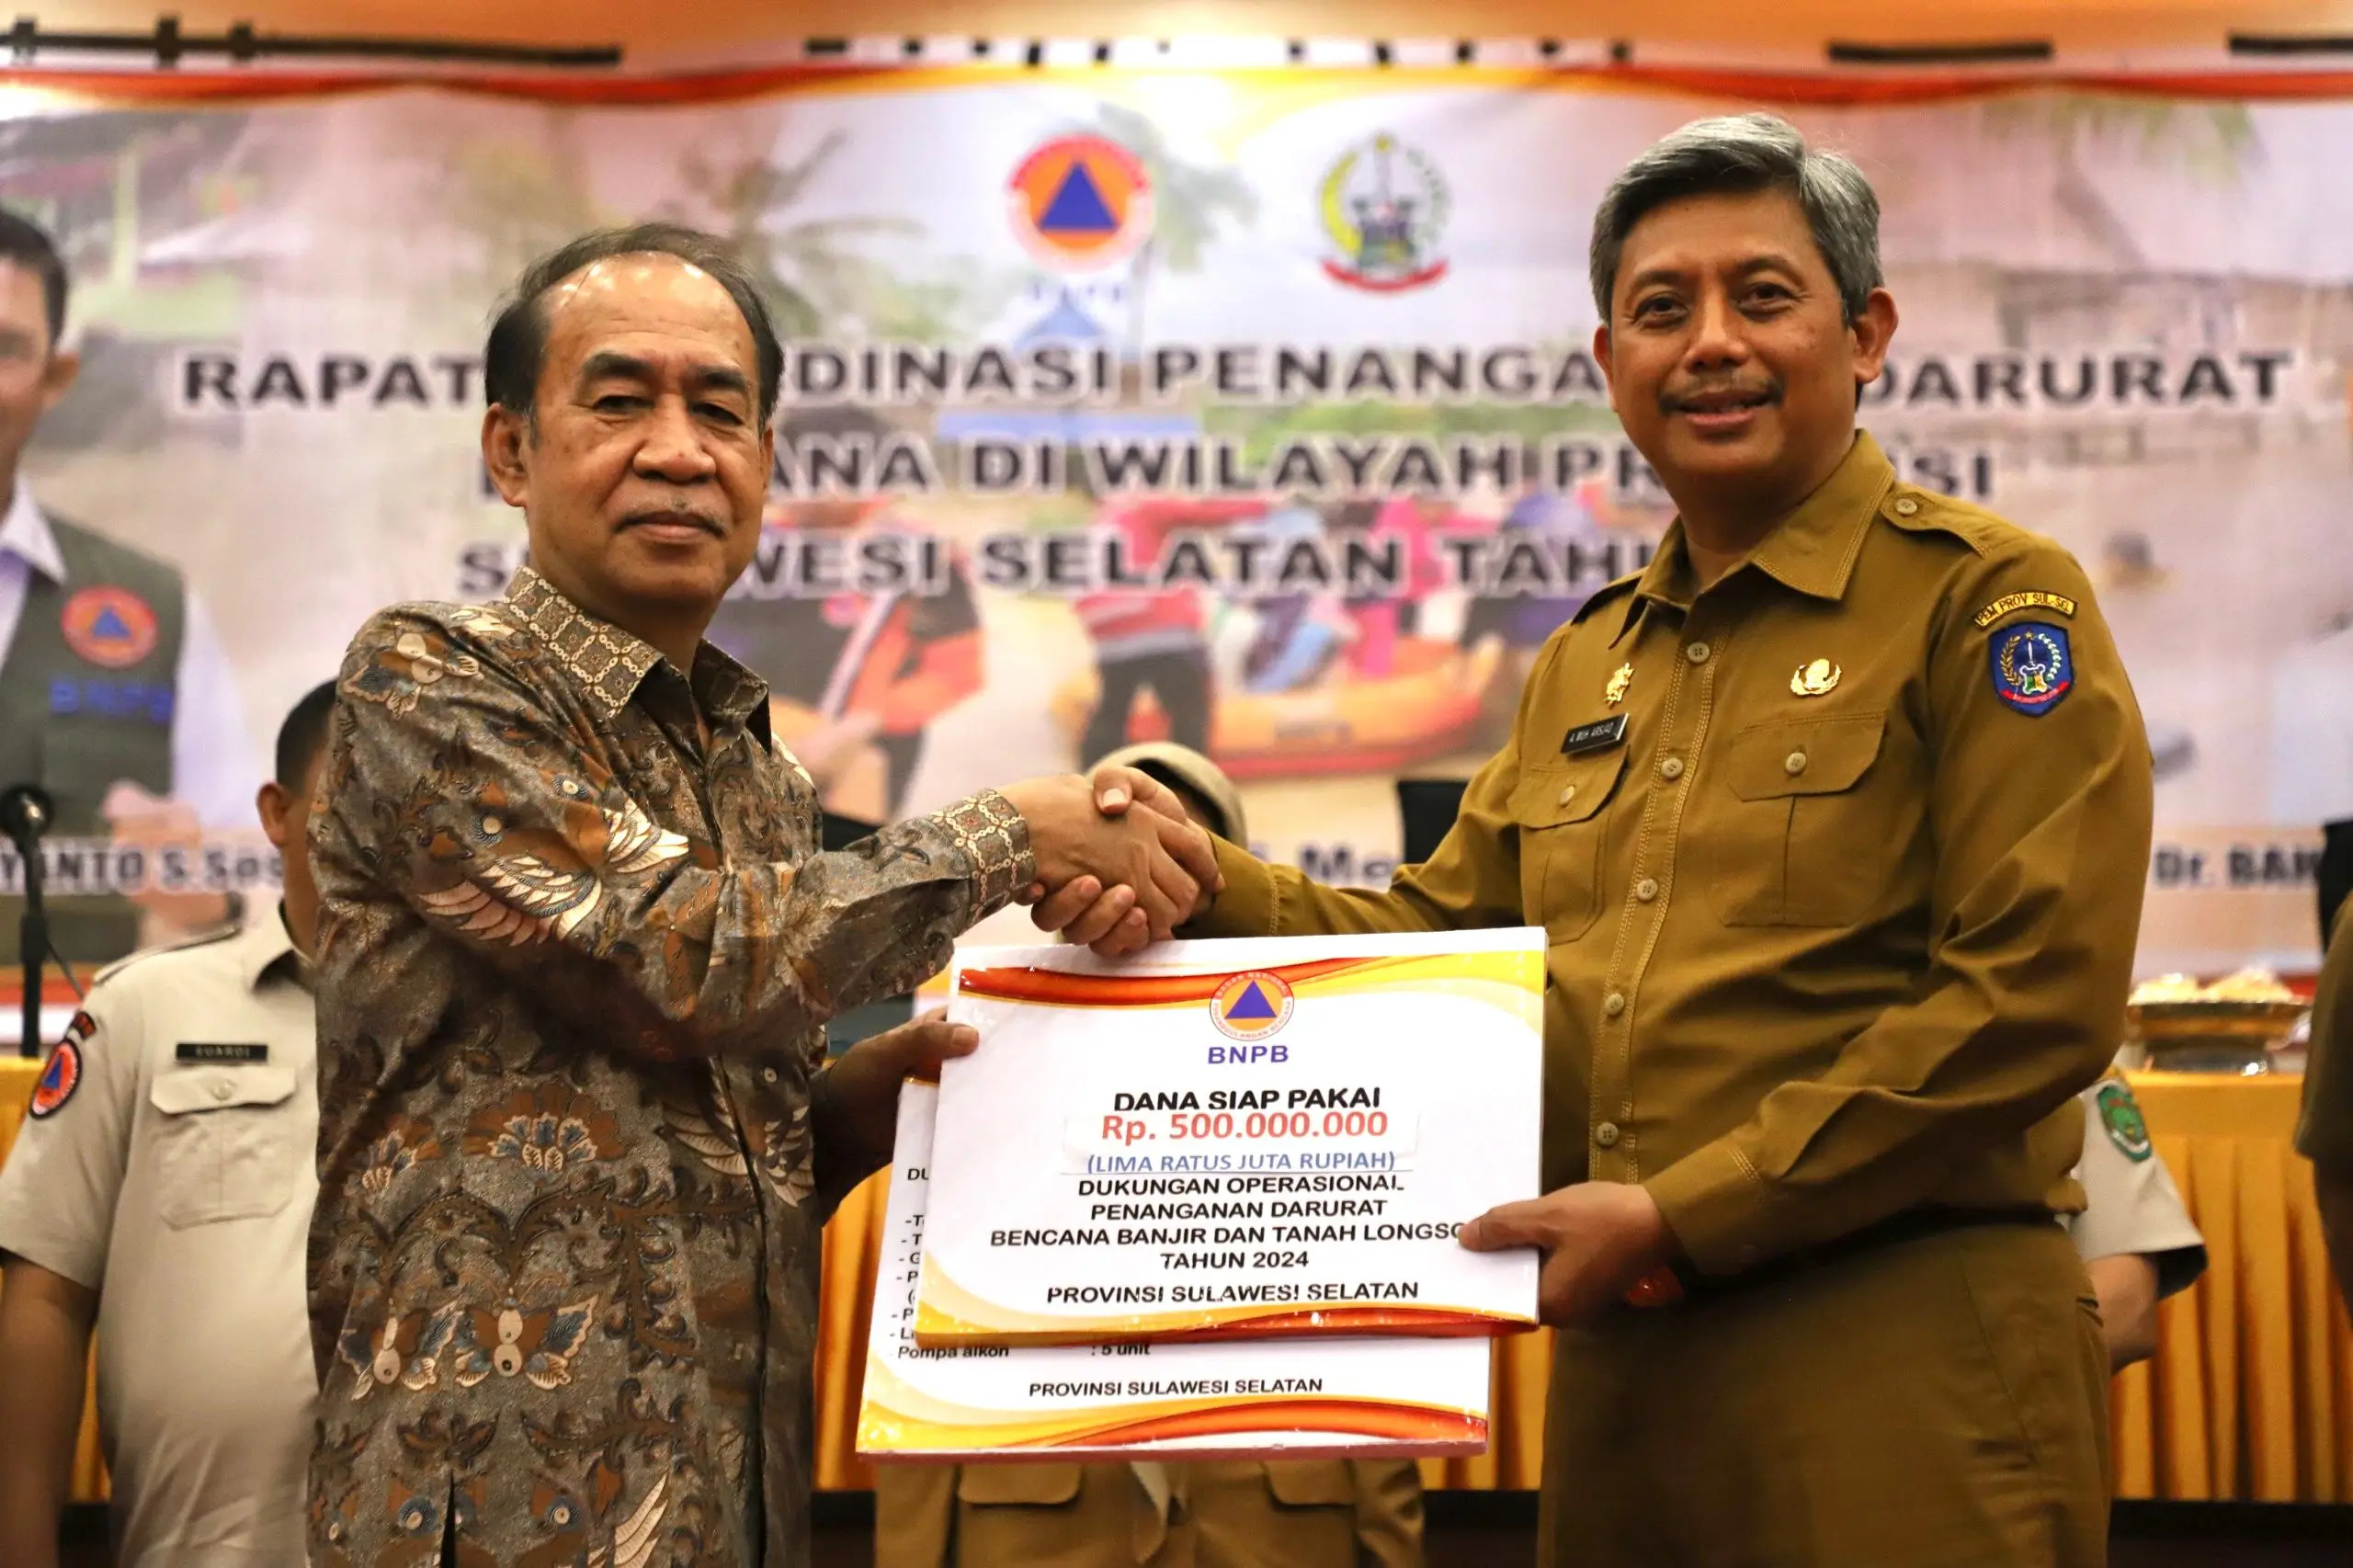 Ketua Komisi VIII DPR RI Ashabul Kahfi (kiri) memberikan bantuan secara simbolis kepada Pj Sekretaris Daerah Provinsi Sulawesi Selatan Andi Muhammad Arsjad untuk percepatan penanganan banjir dan tanah longsor, Senin (6/5).